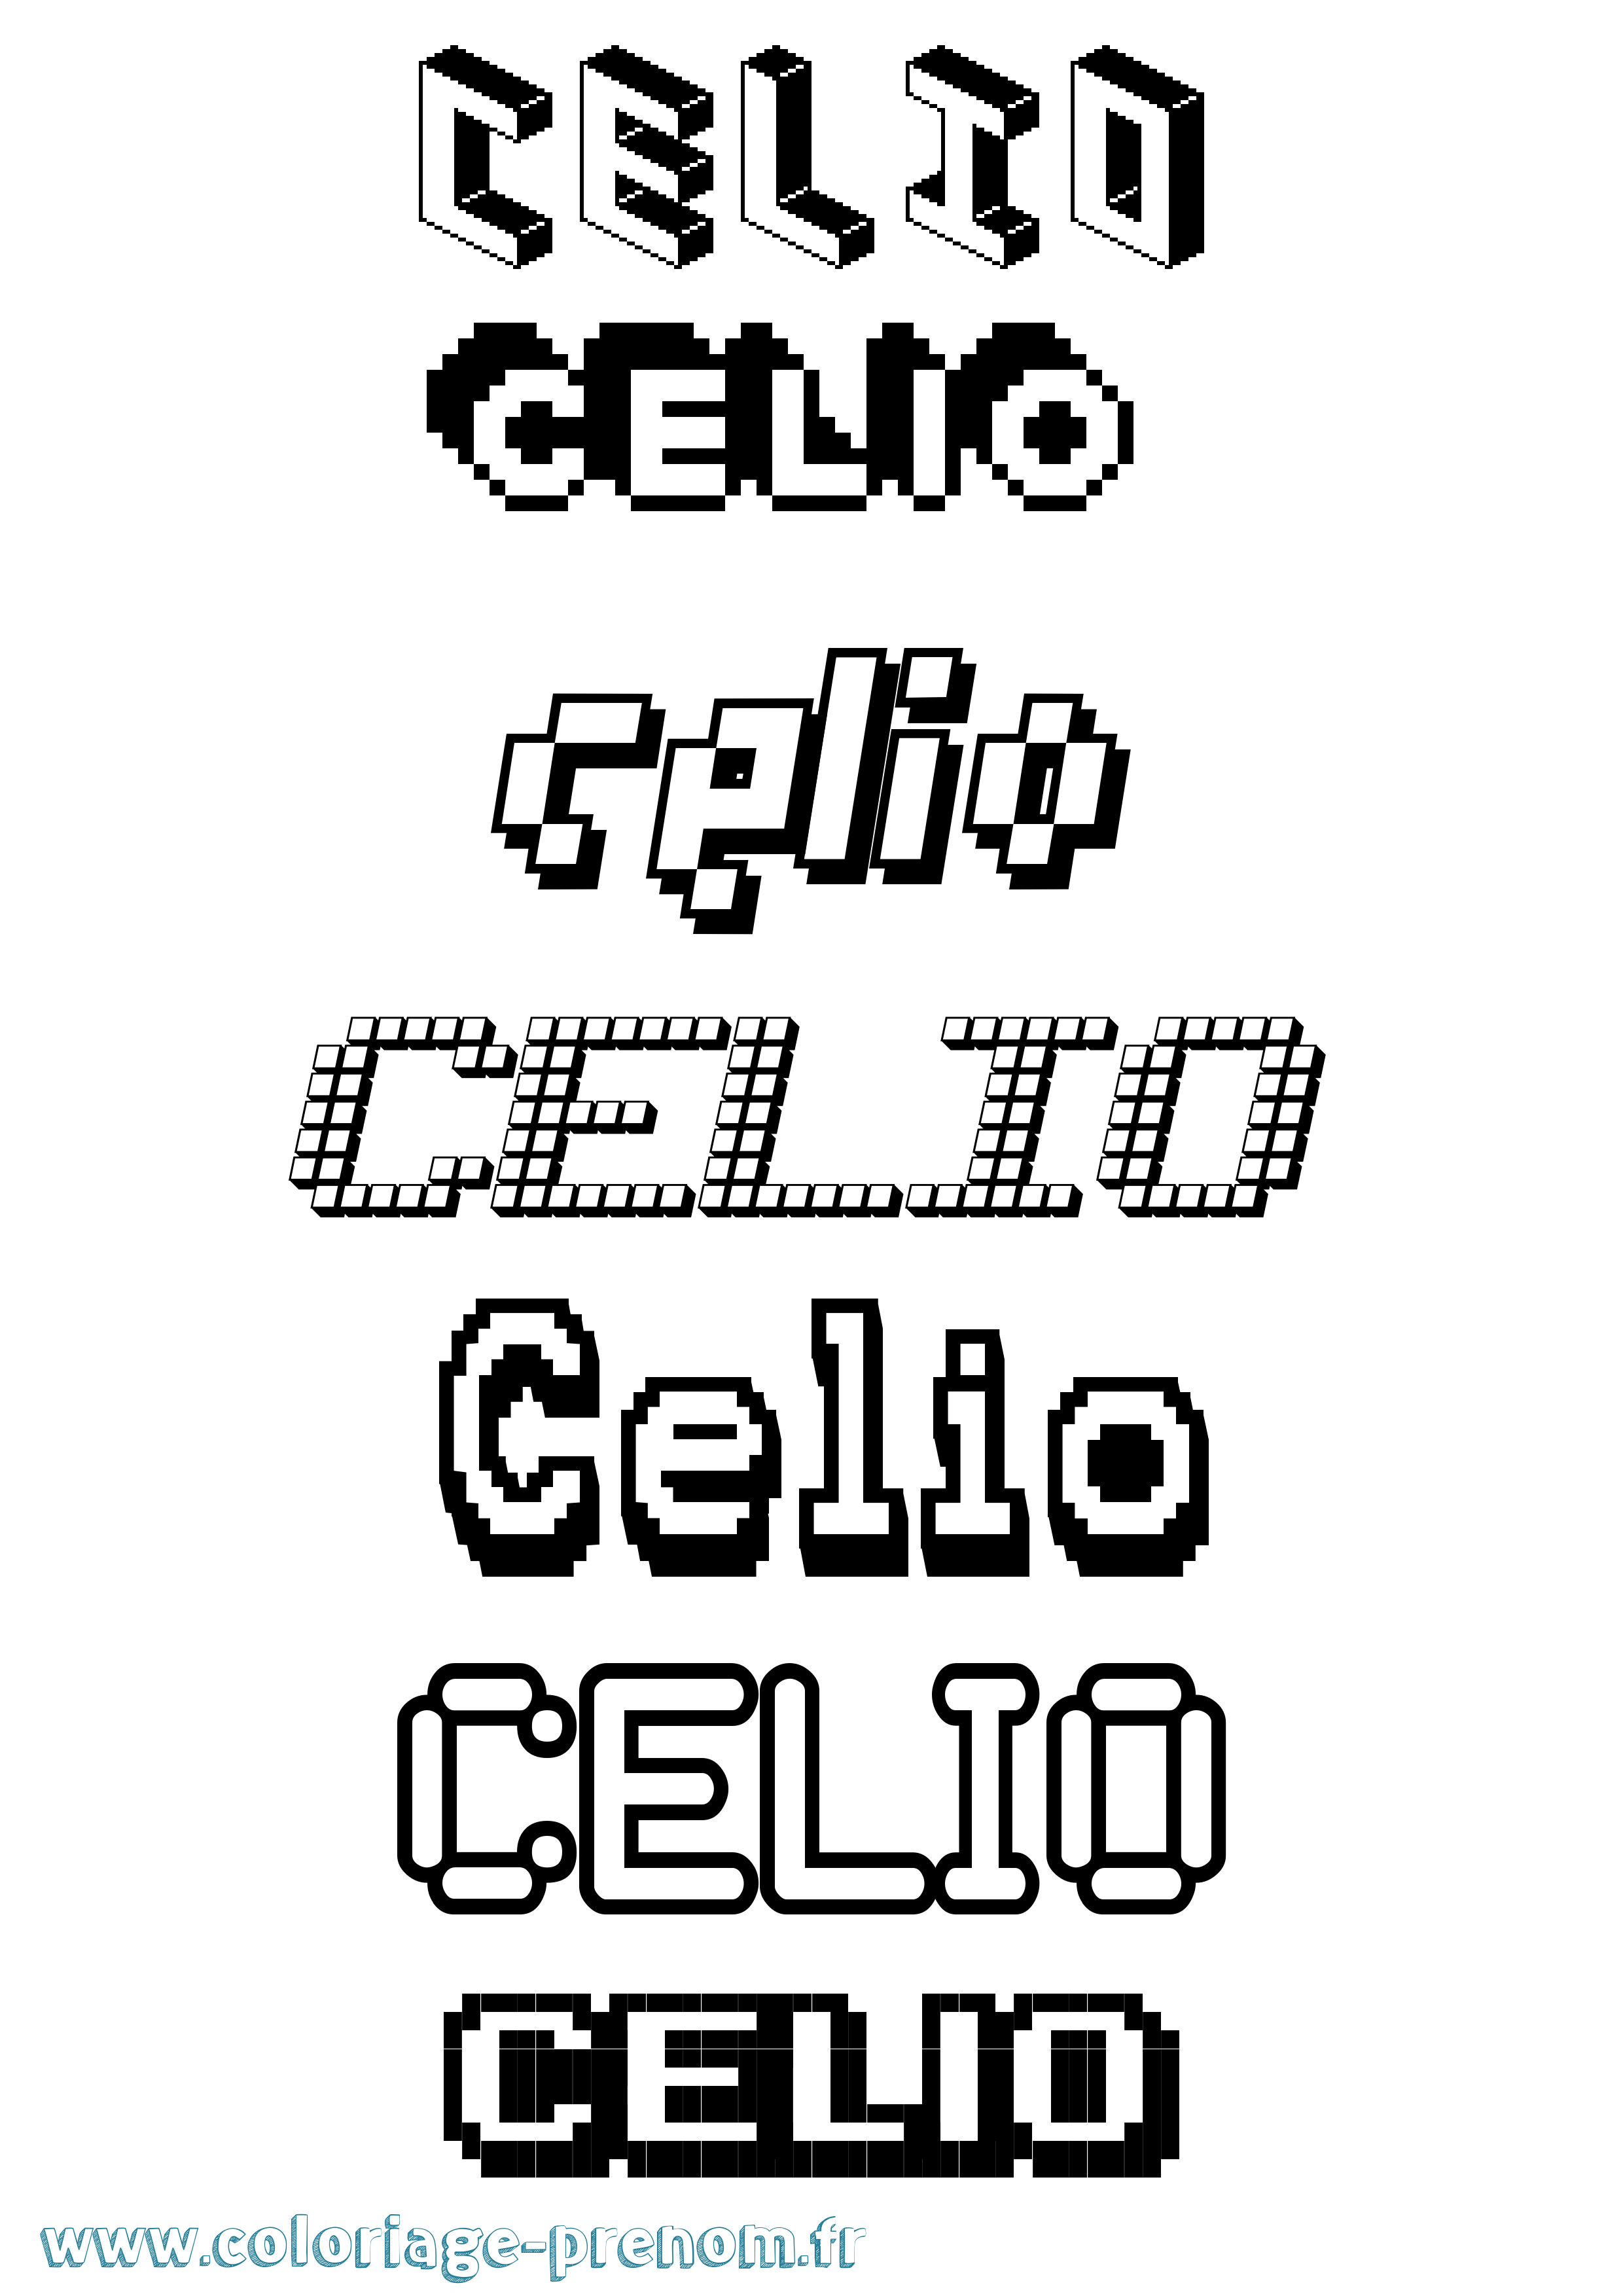 Coloriage prénom Celio Pixel